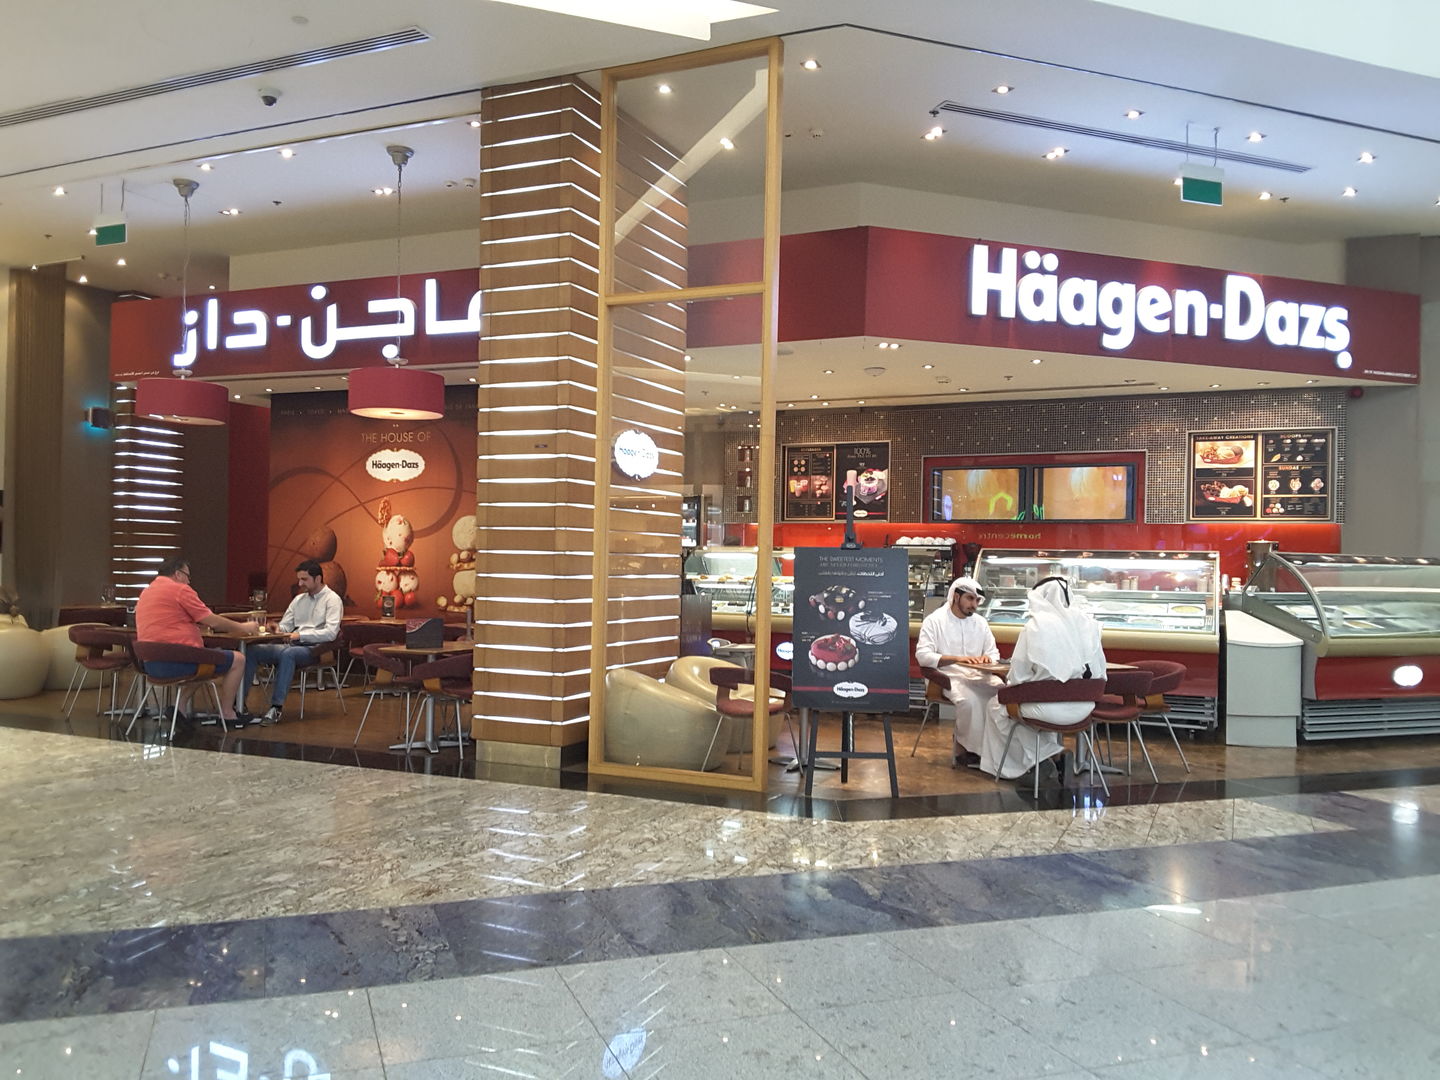 Best Ice cream parlours in Dubai